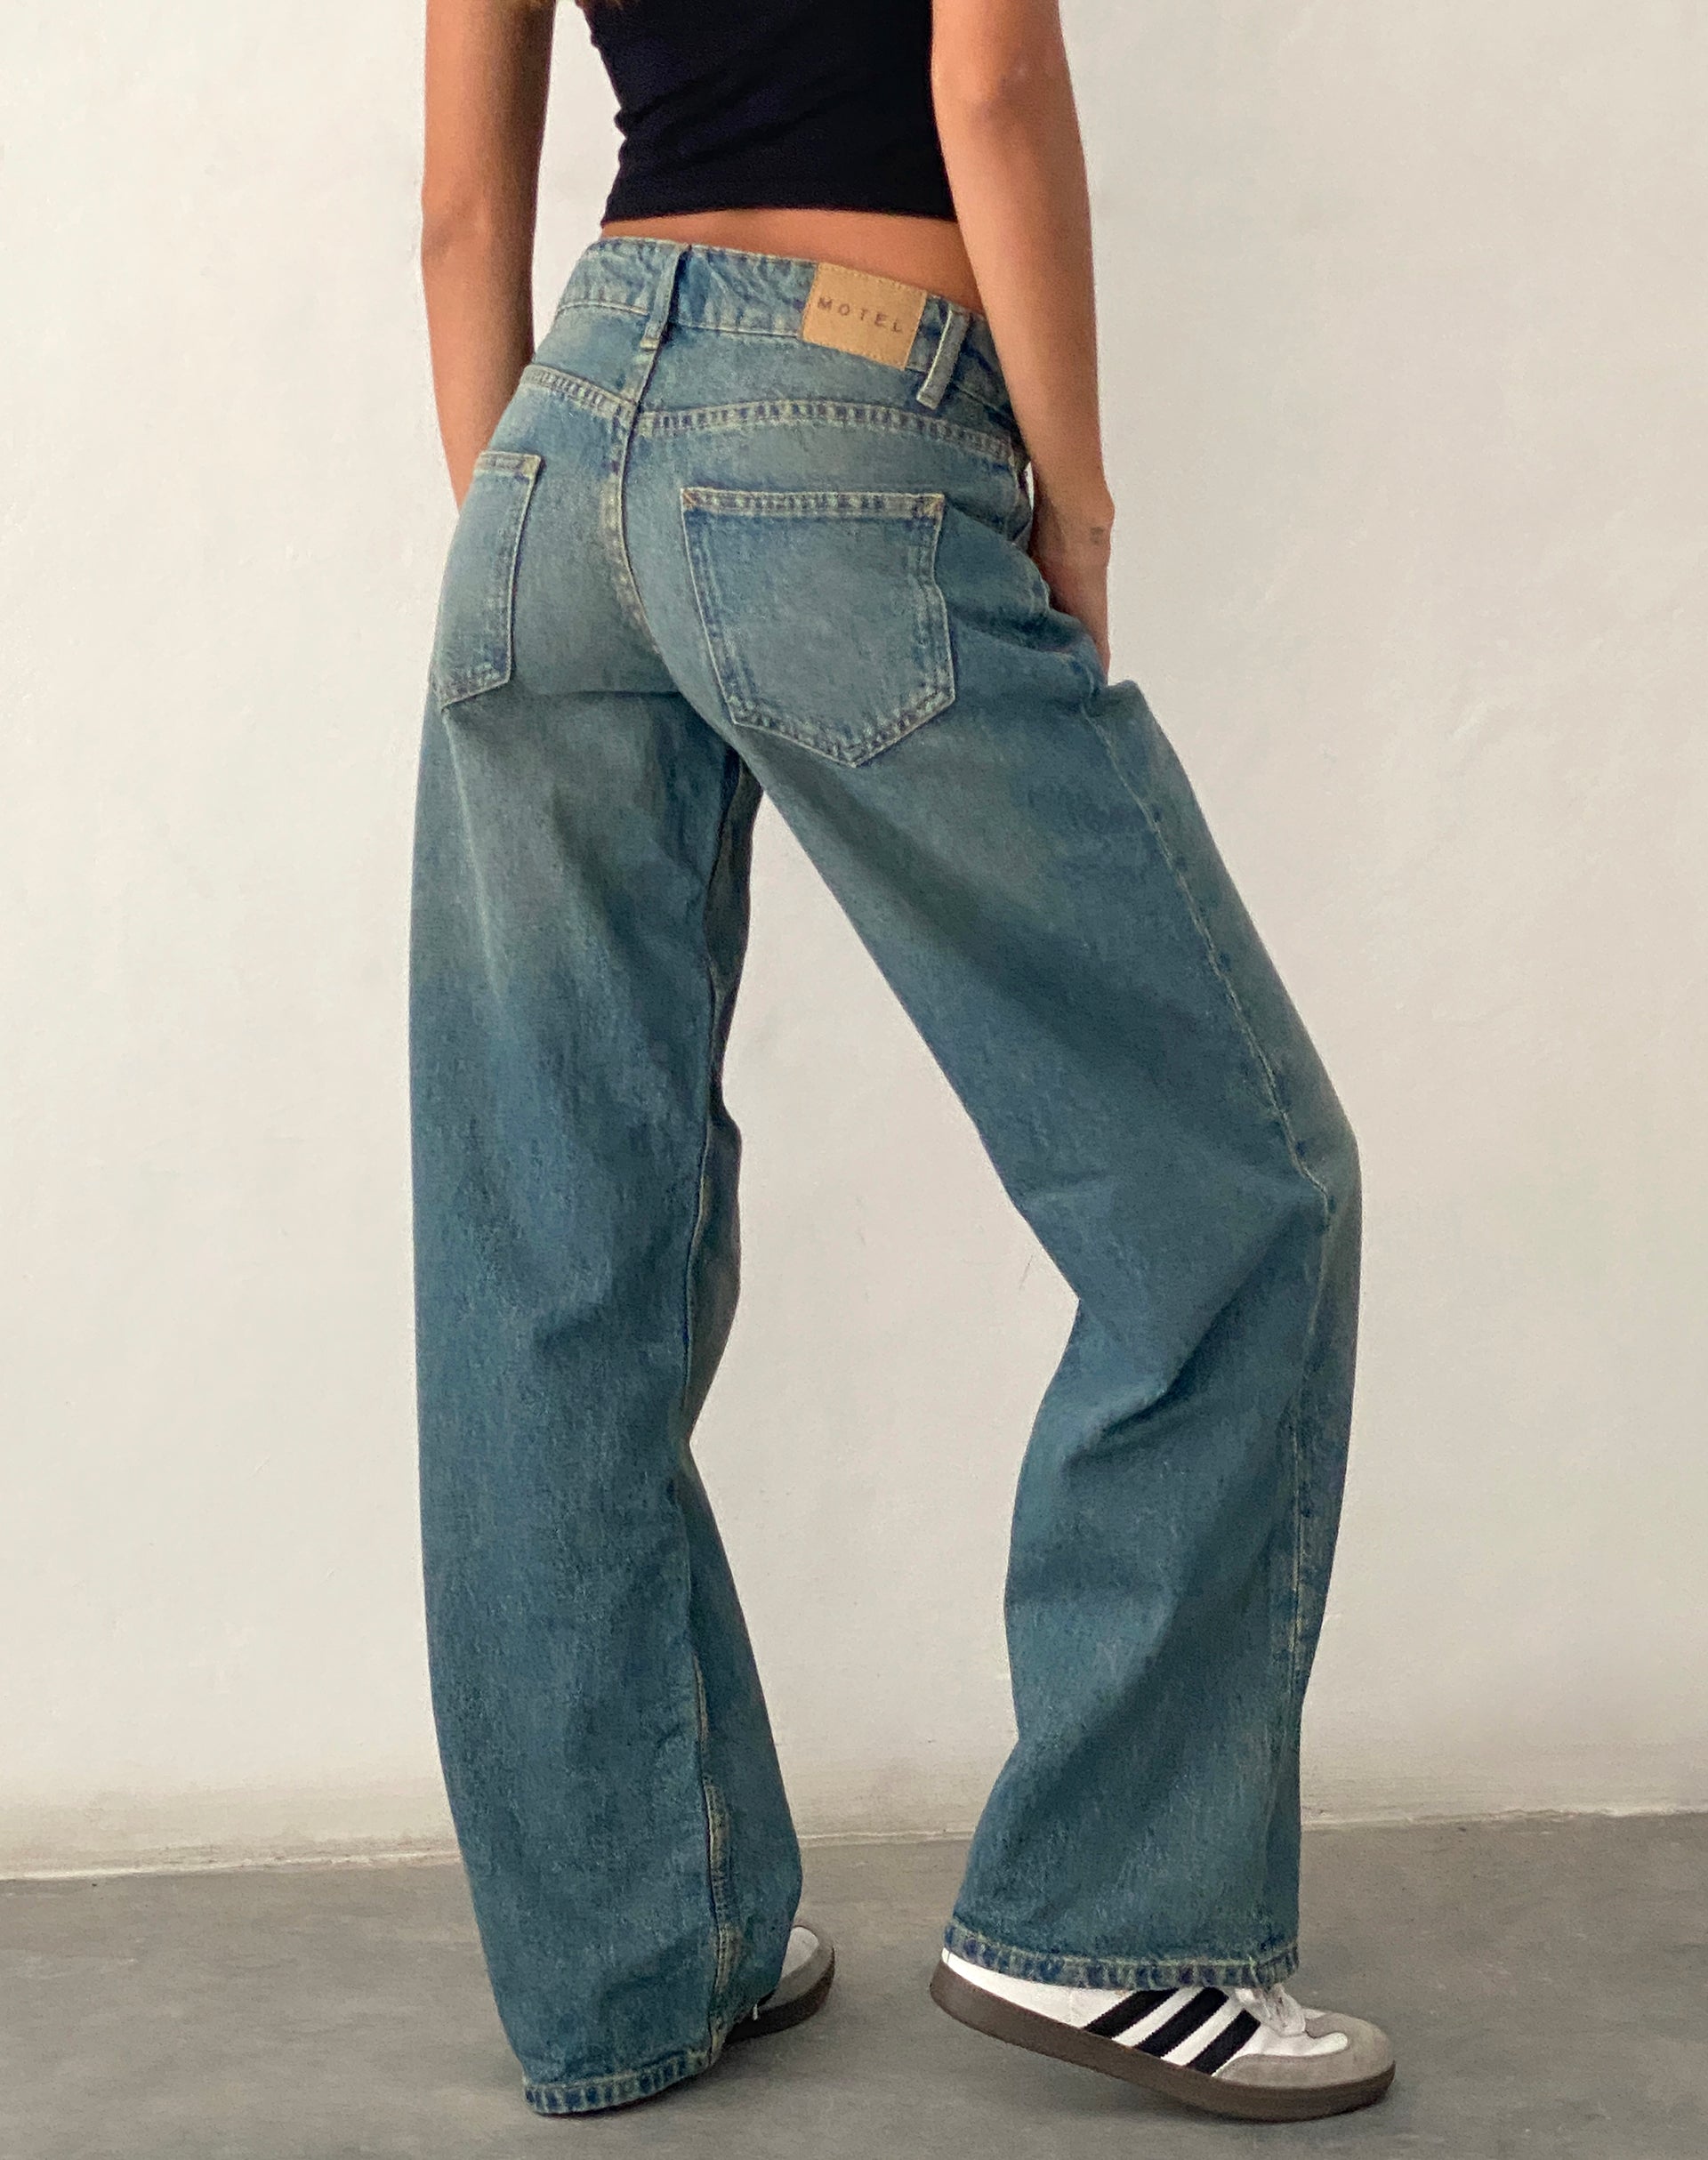 Bild von Low Rise Parallel Jeans in Vintage Blau Grün